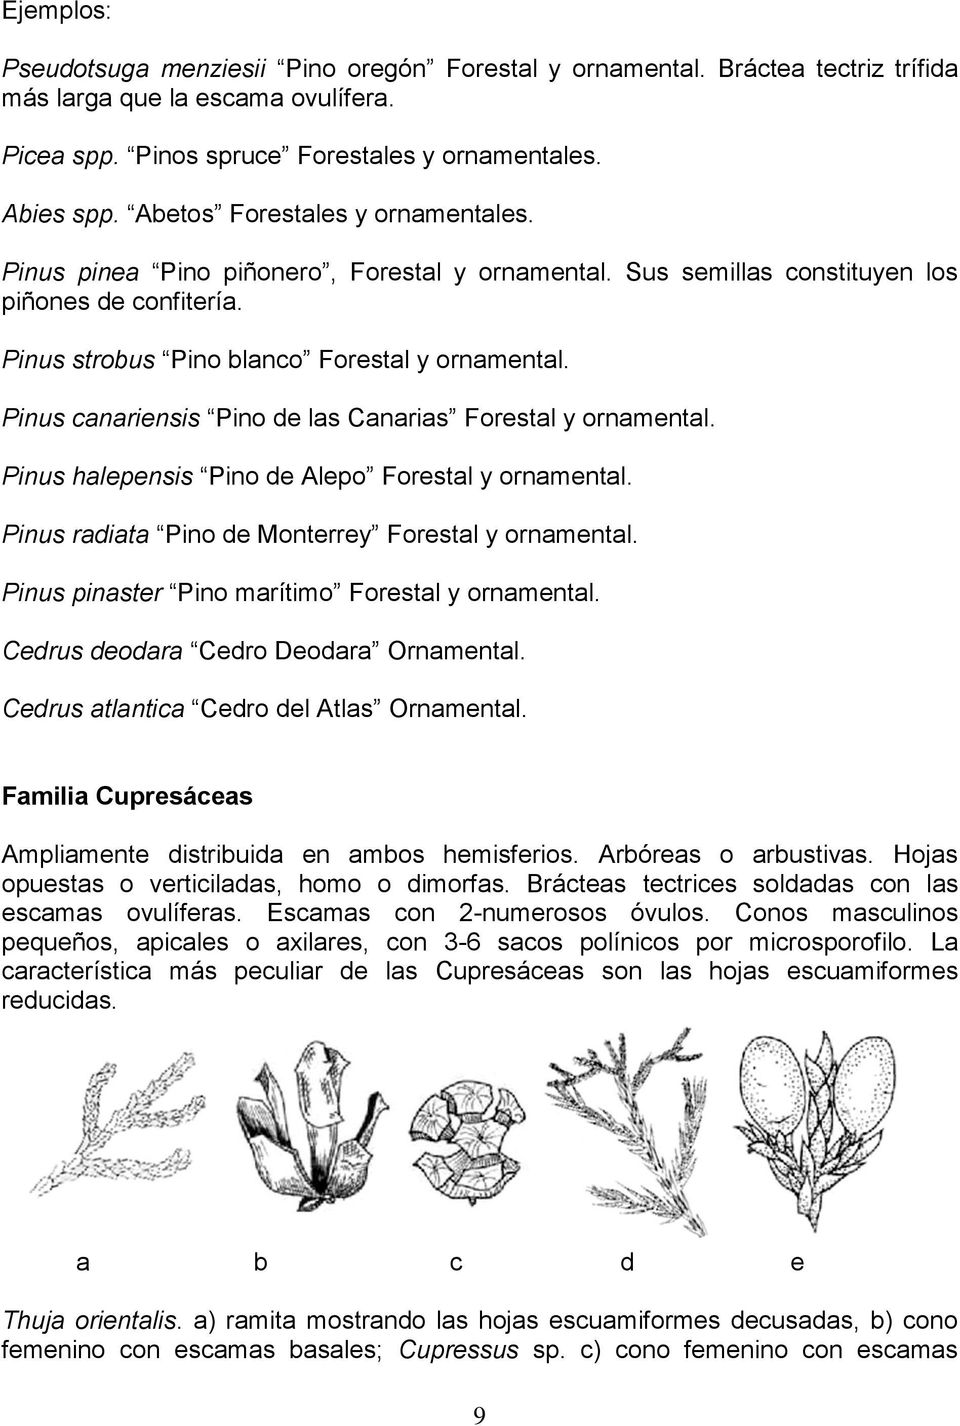 Pinus canariensis Pino de las Canarias Forestal y ornamental. Pinus halepensis Pino de Alepo Forestal y ornamental. Pinus radiata Pino de Monterrey Forestal y ornamental.